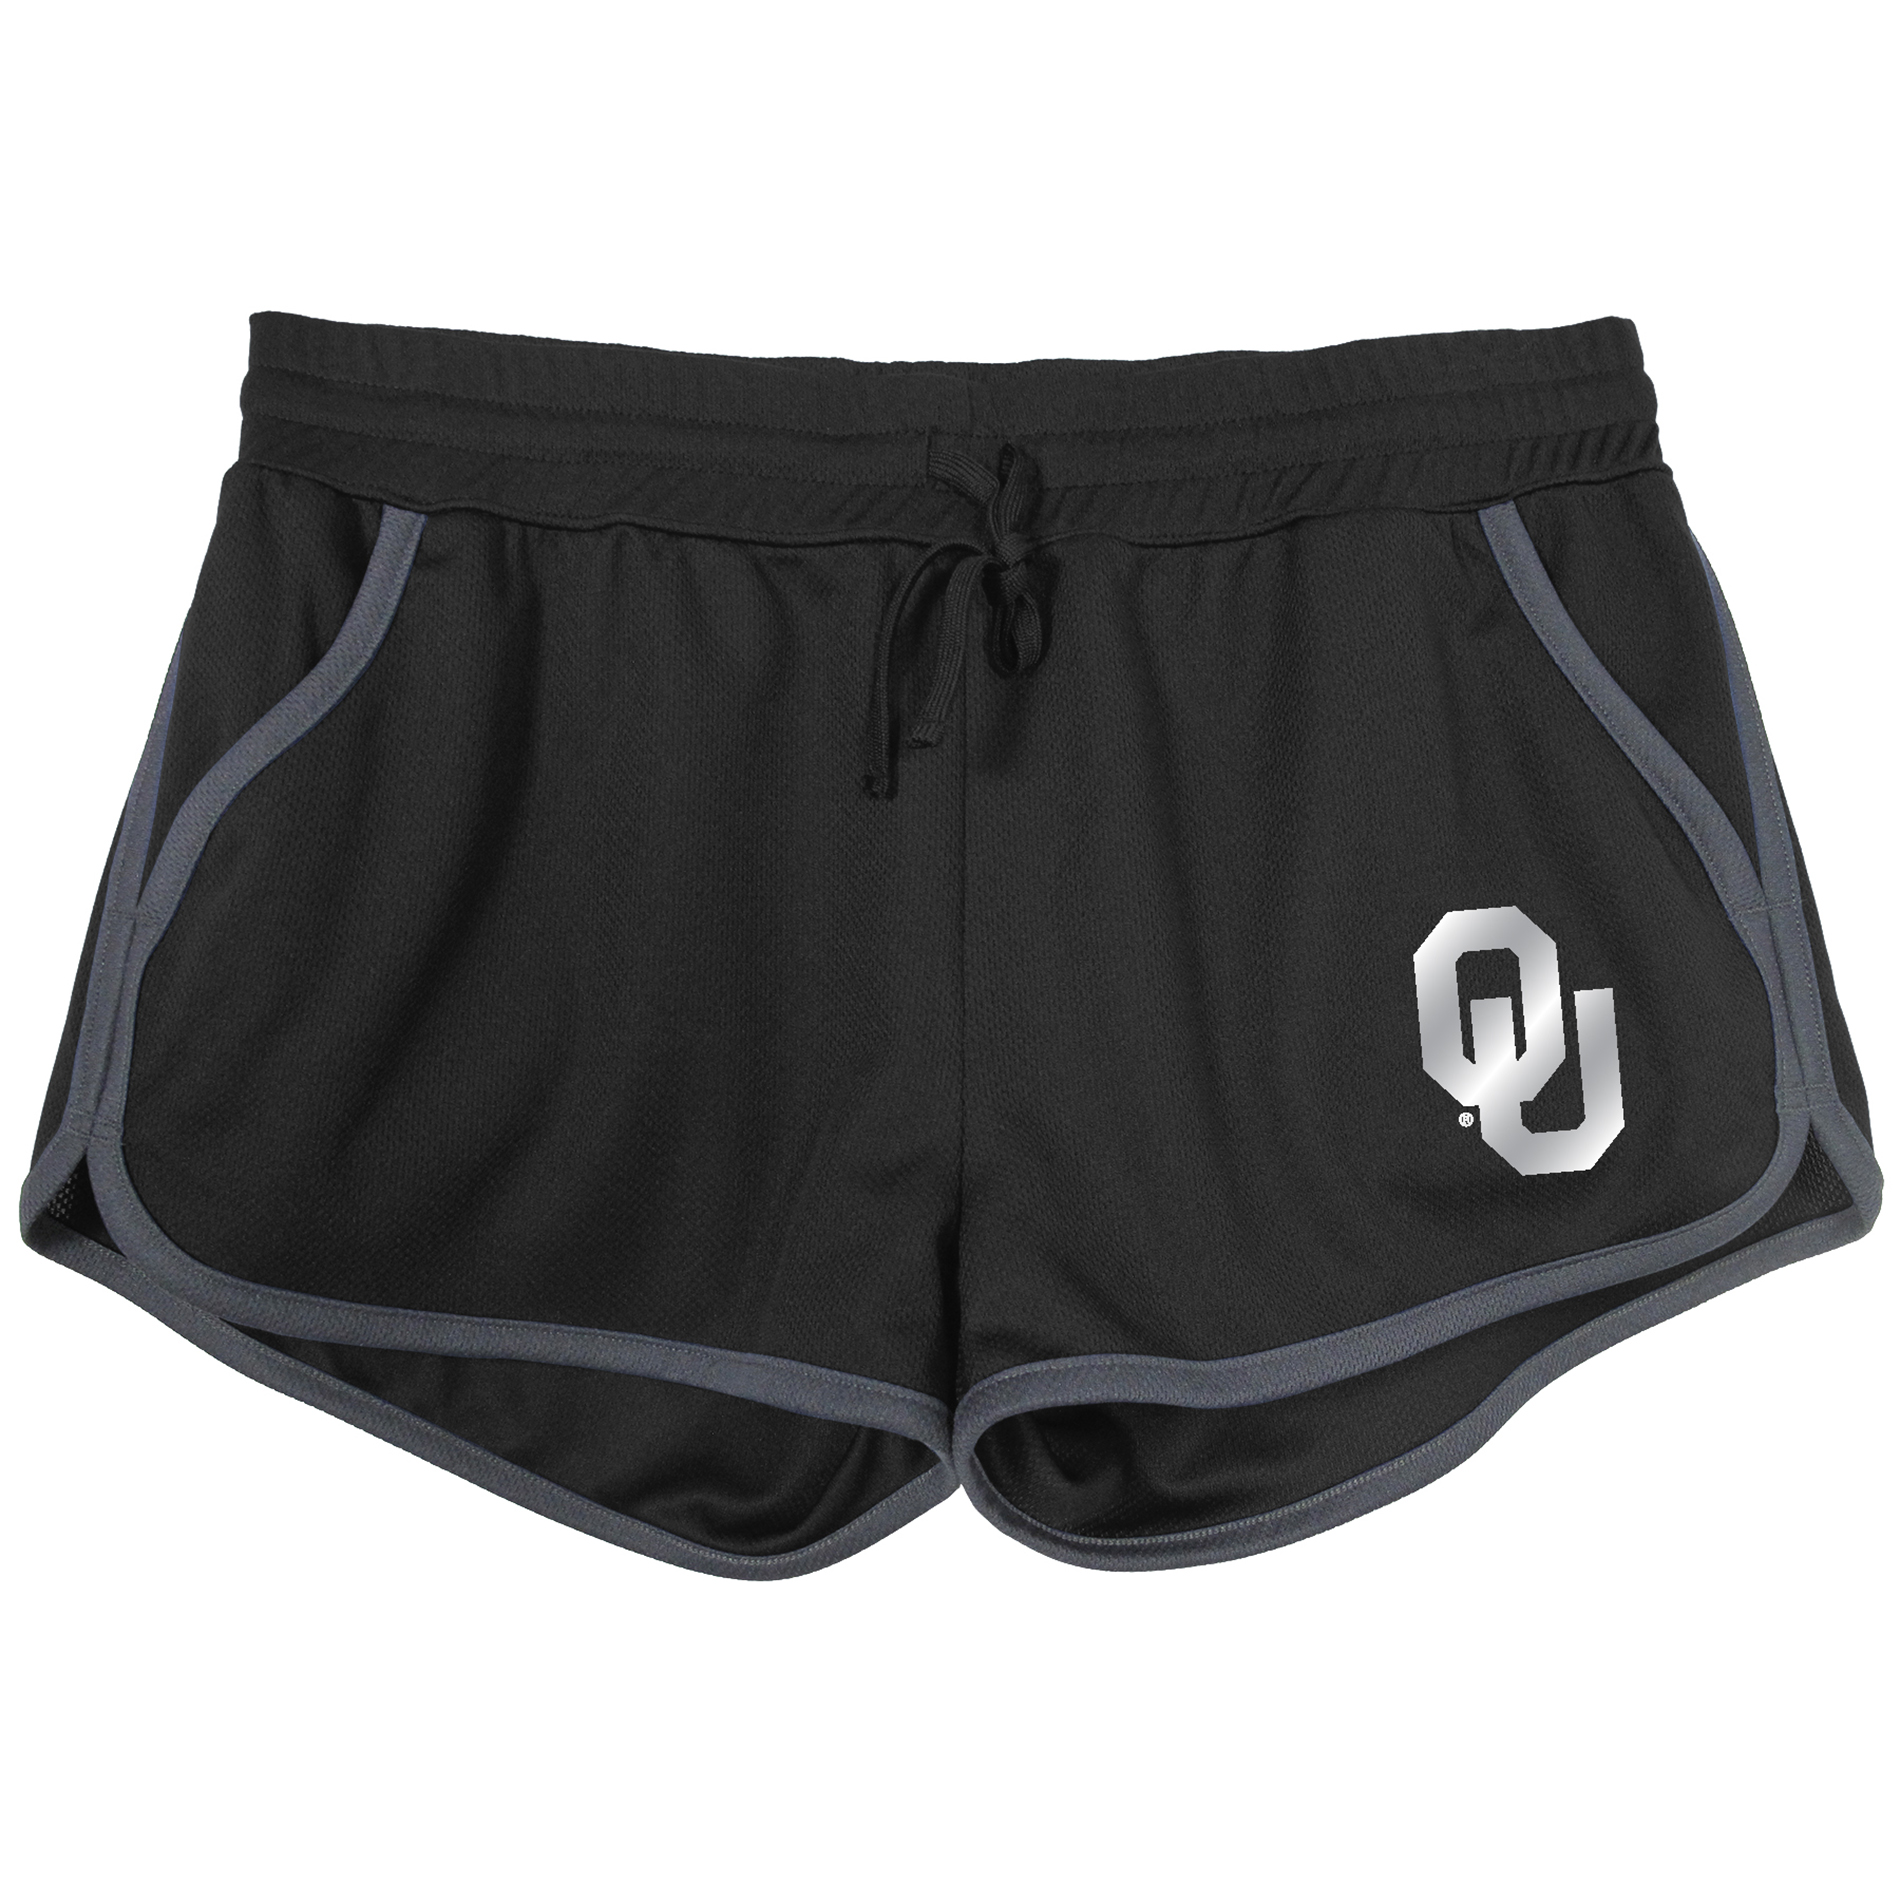 NCAA Women's Oklahoma Sooners Mesh Shorts